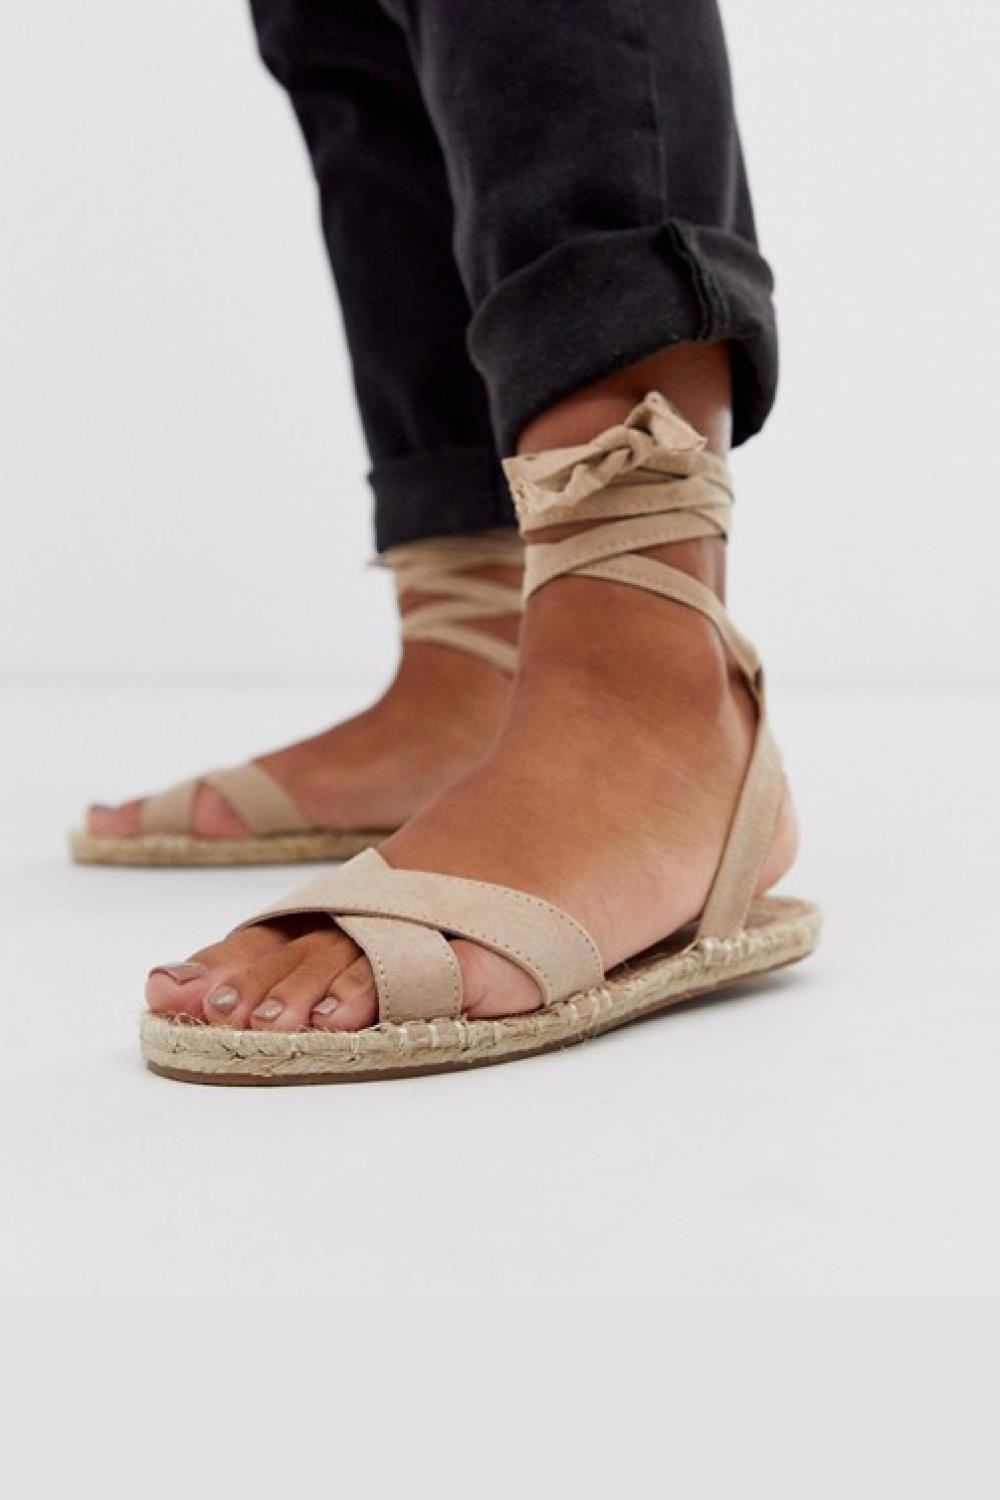 sandalias moda mujer asos 15,99€